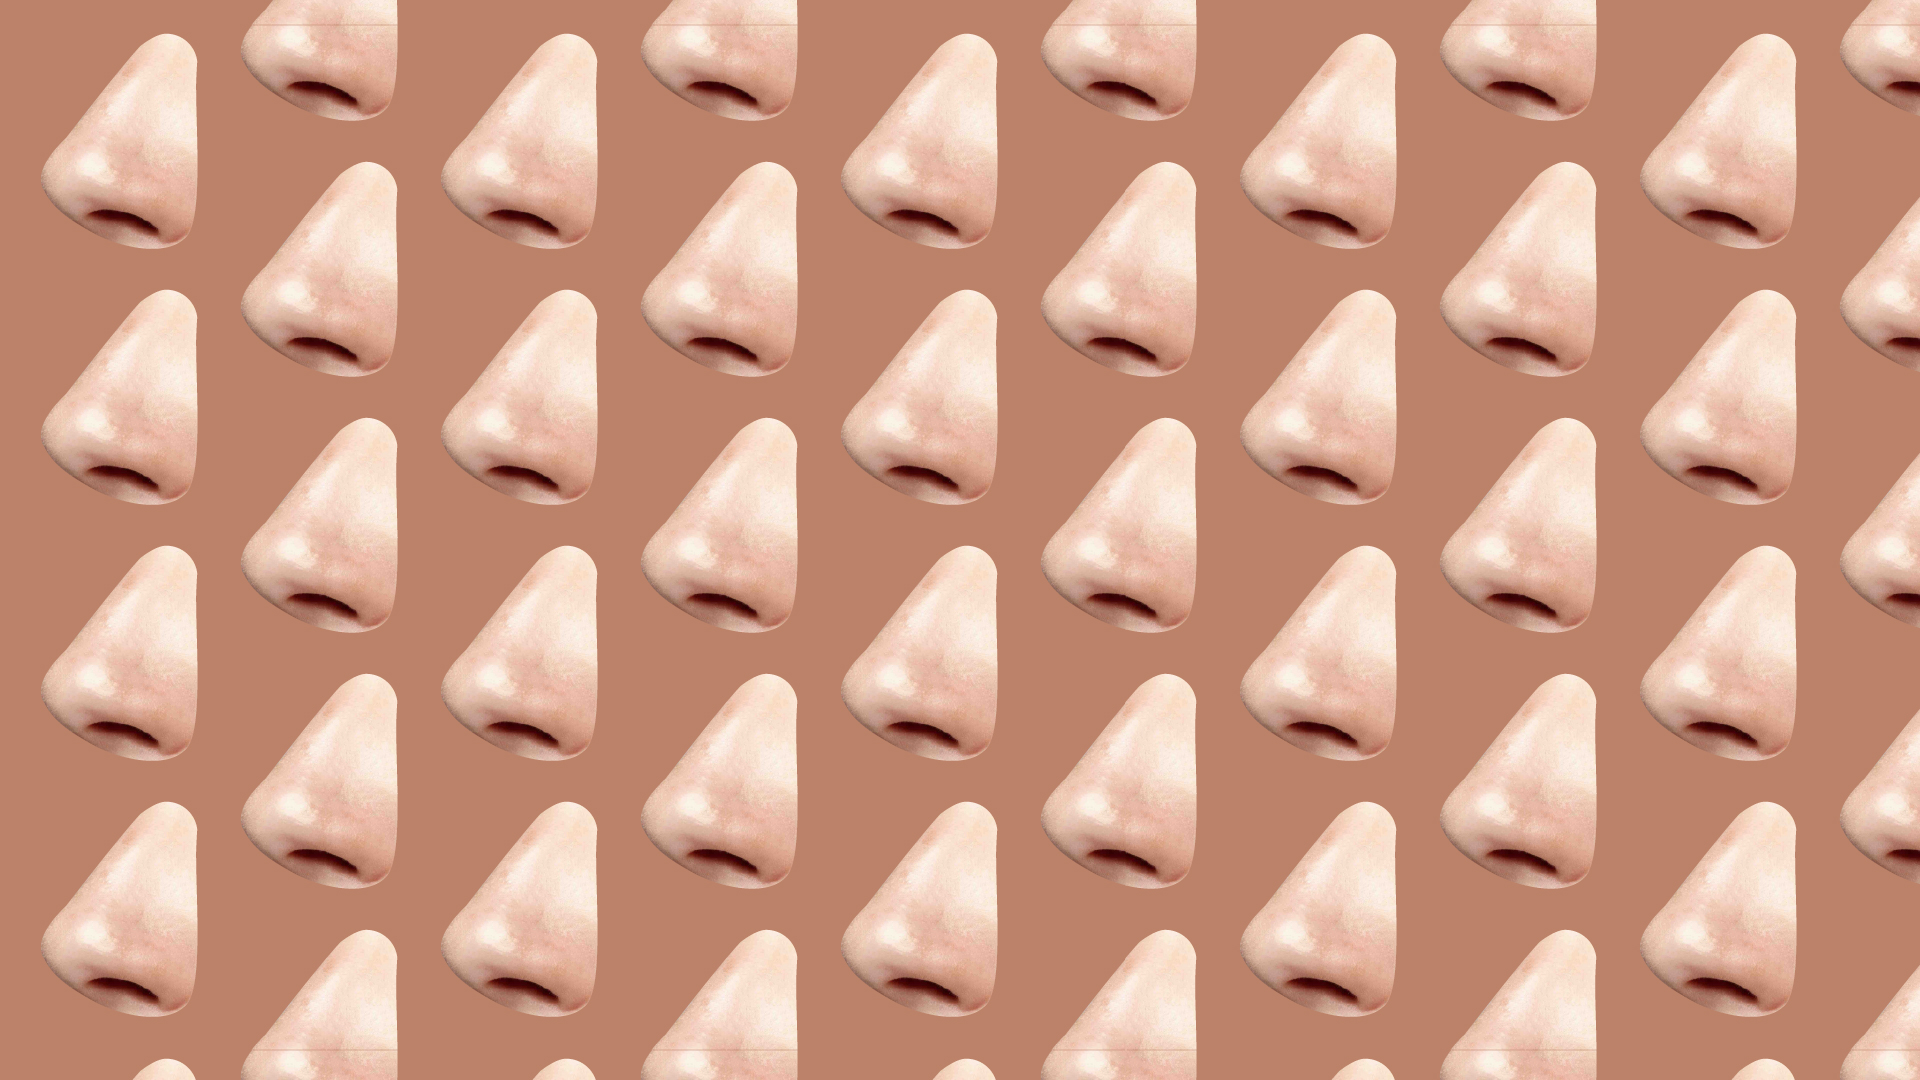 os narizes estão ficando todos iguais – finos e arrebitados, usando filtros, maquiagem ou pequenas intervenções cirúrgicas